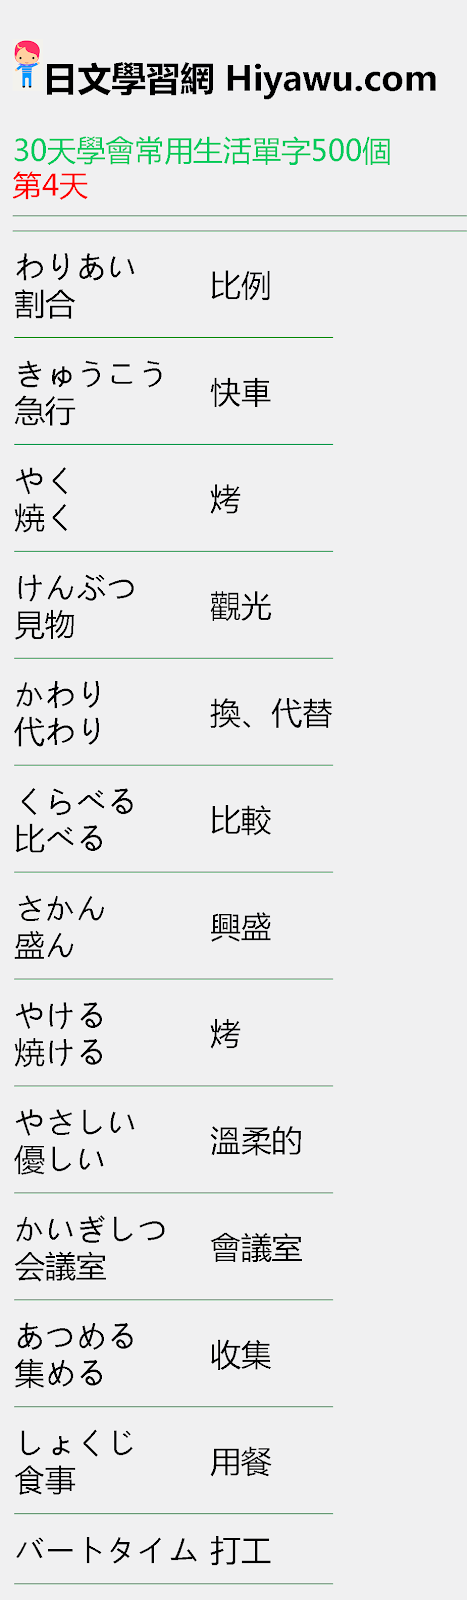 30天學會日文常用生活單字500個 基本單字附假名 日文自學網站 日語自學者最愛的日文學習app持續更新中